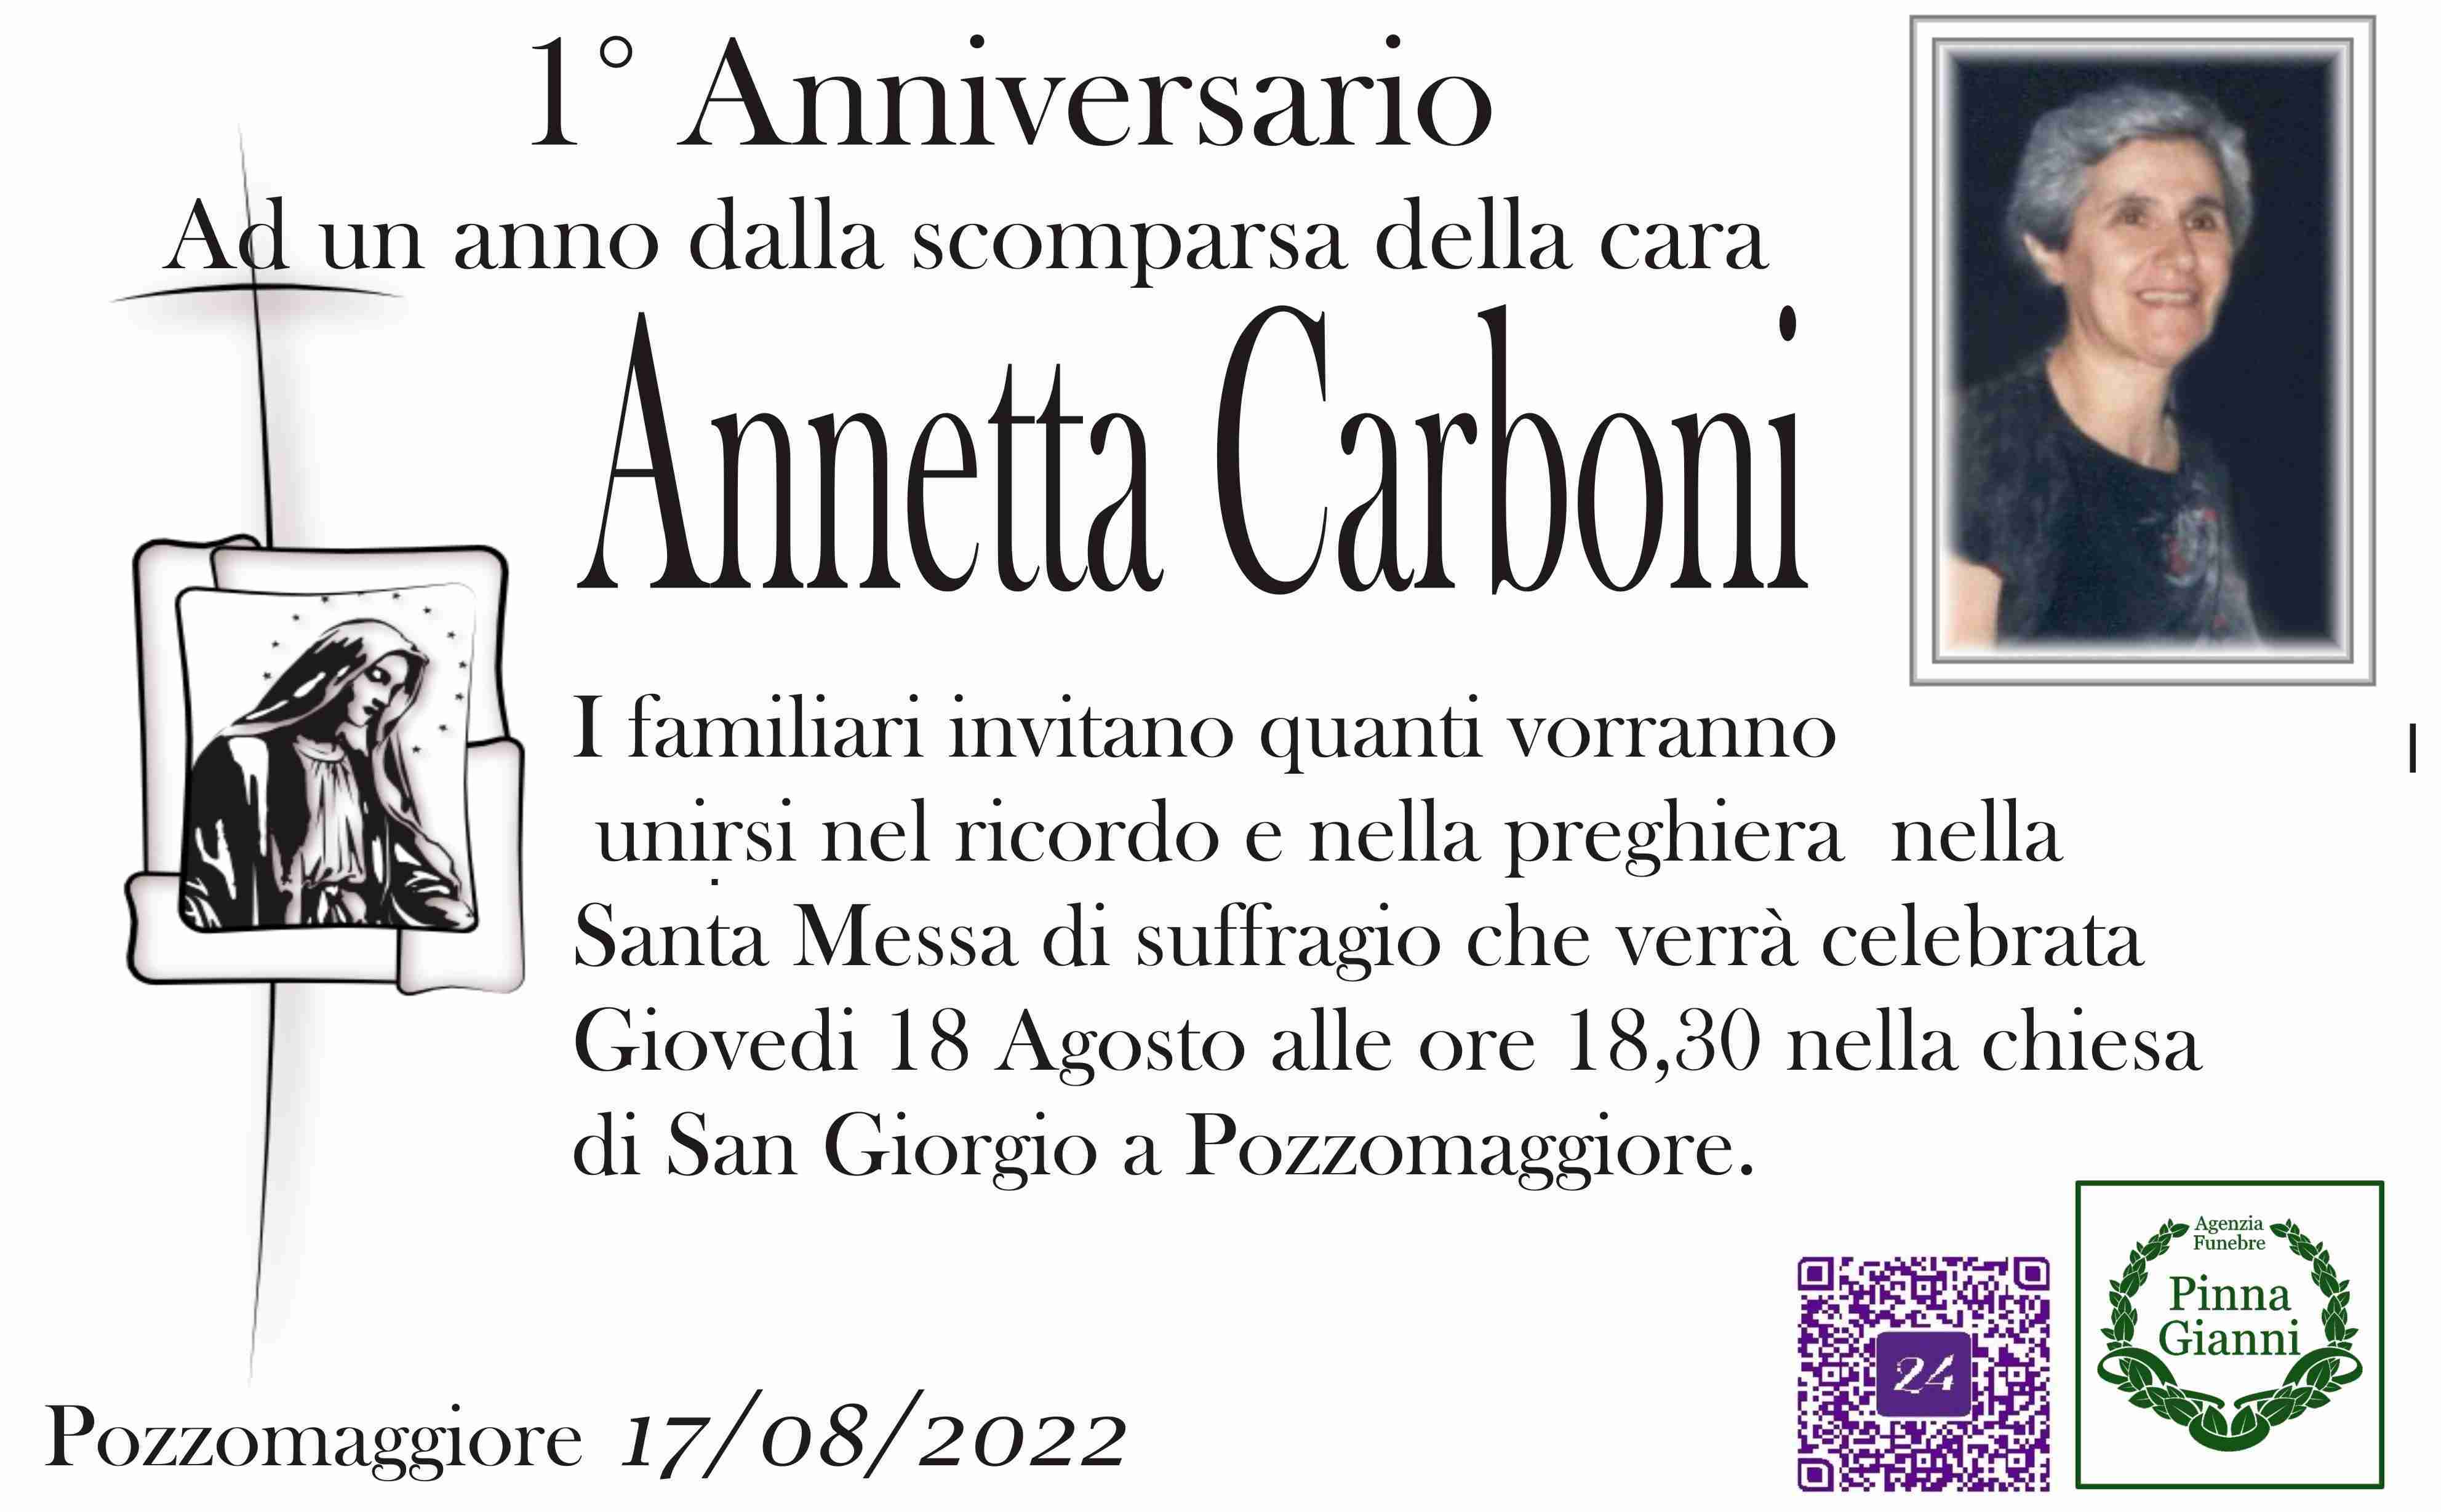 Annetta Carboni